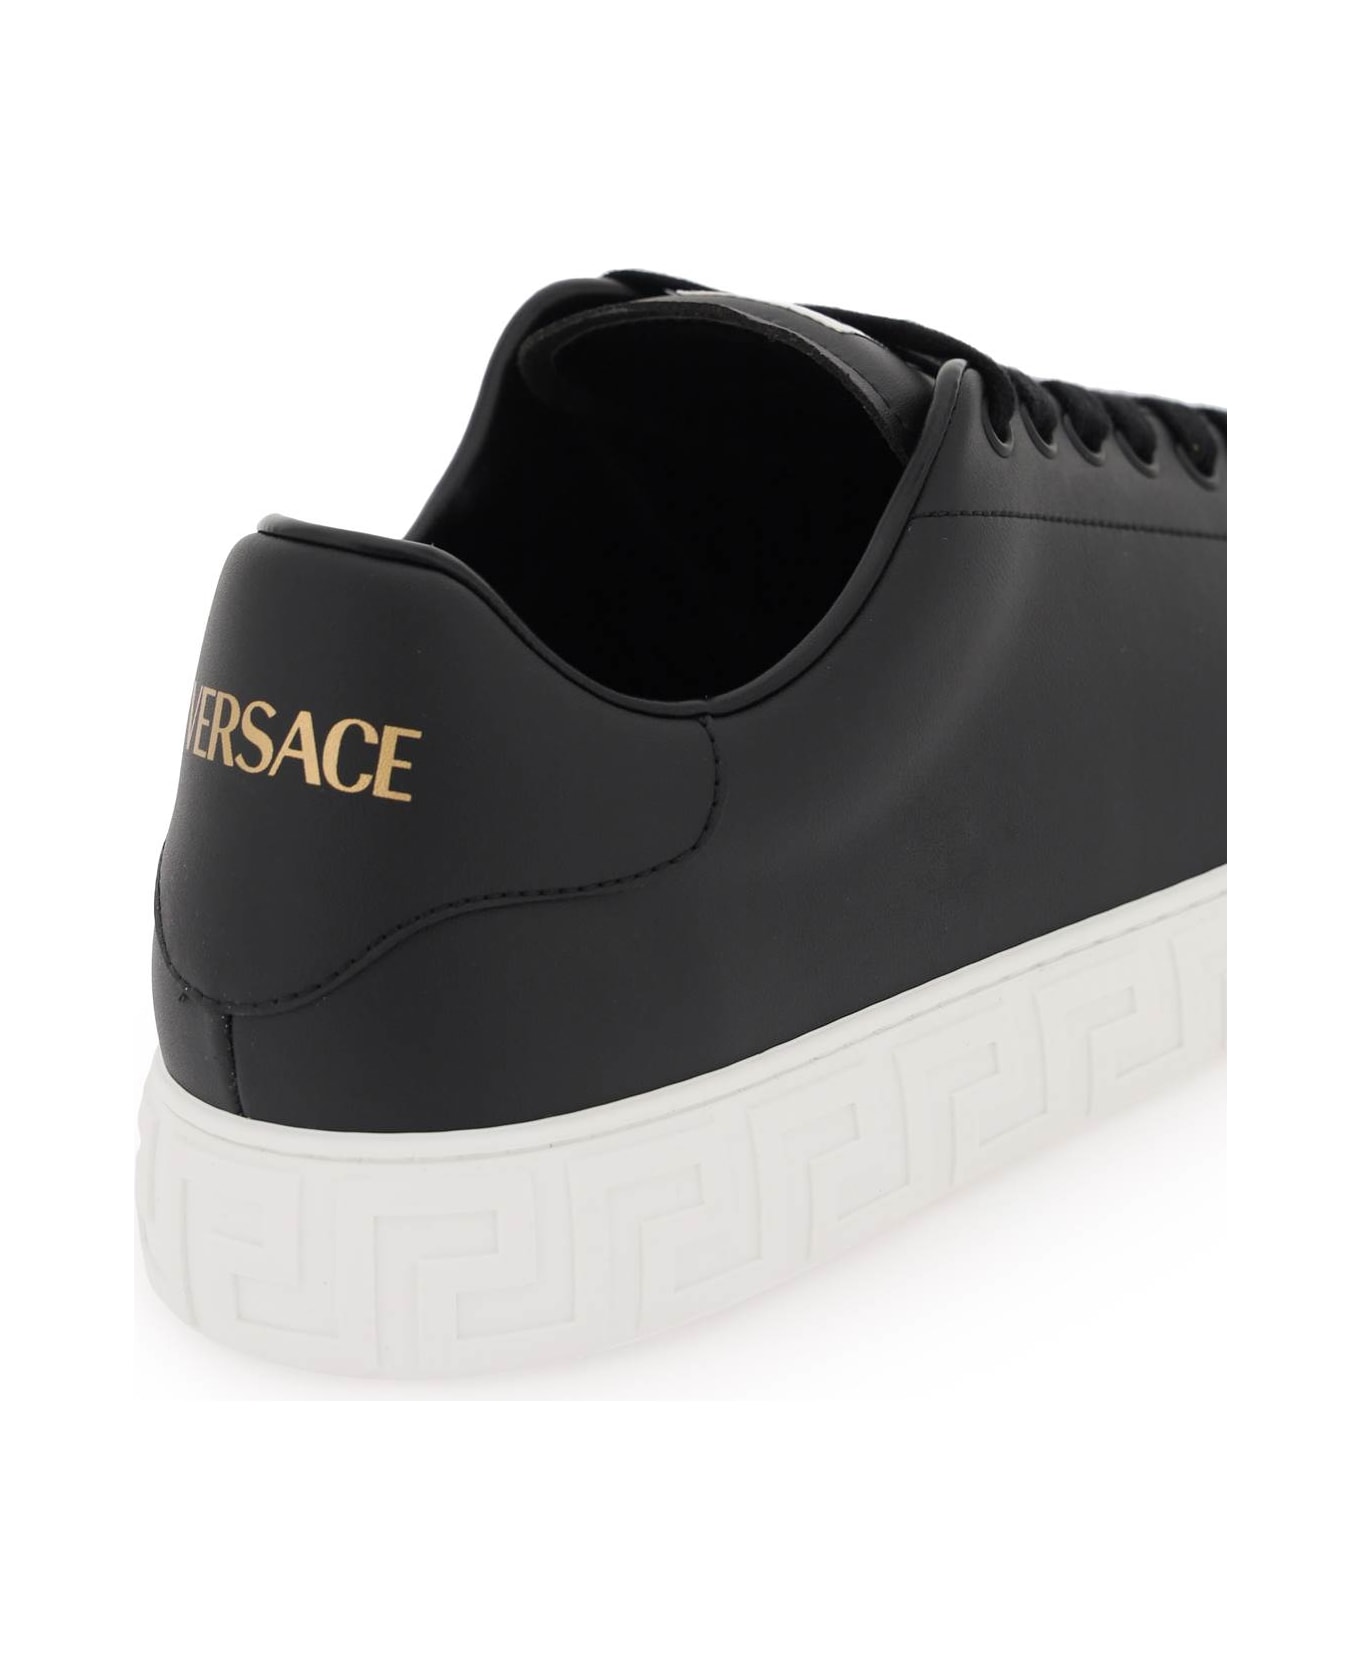 Versace Black Leather Sneakers - Black